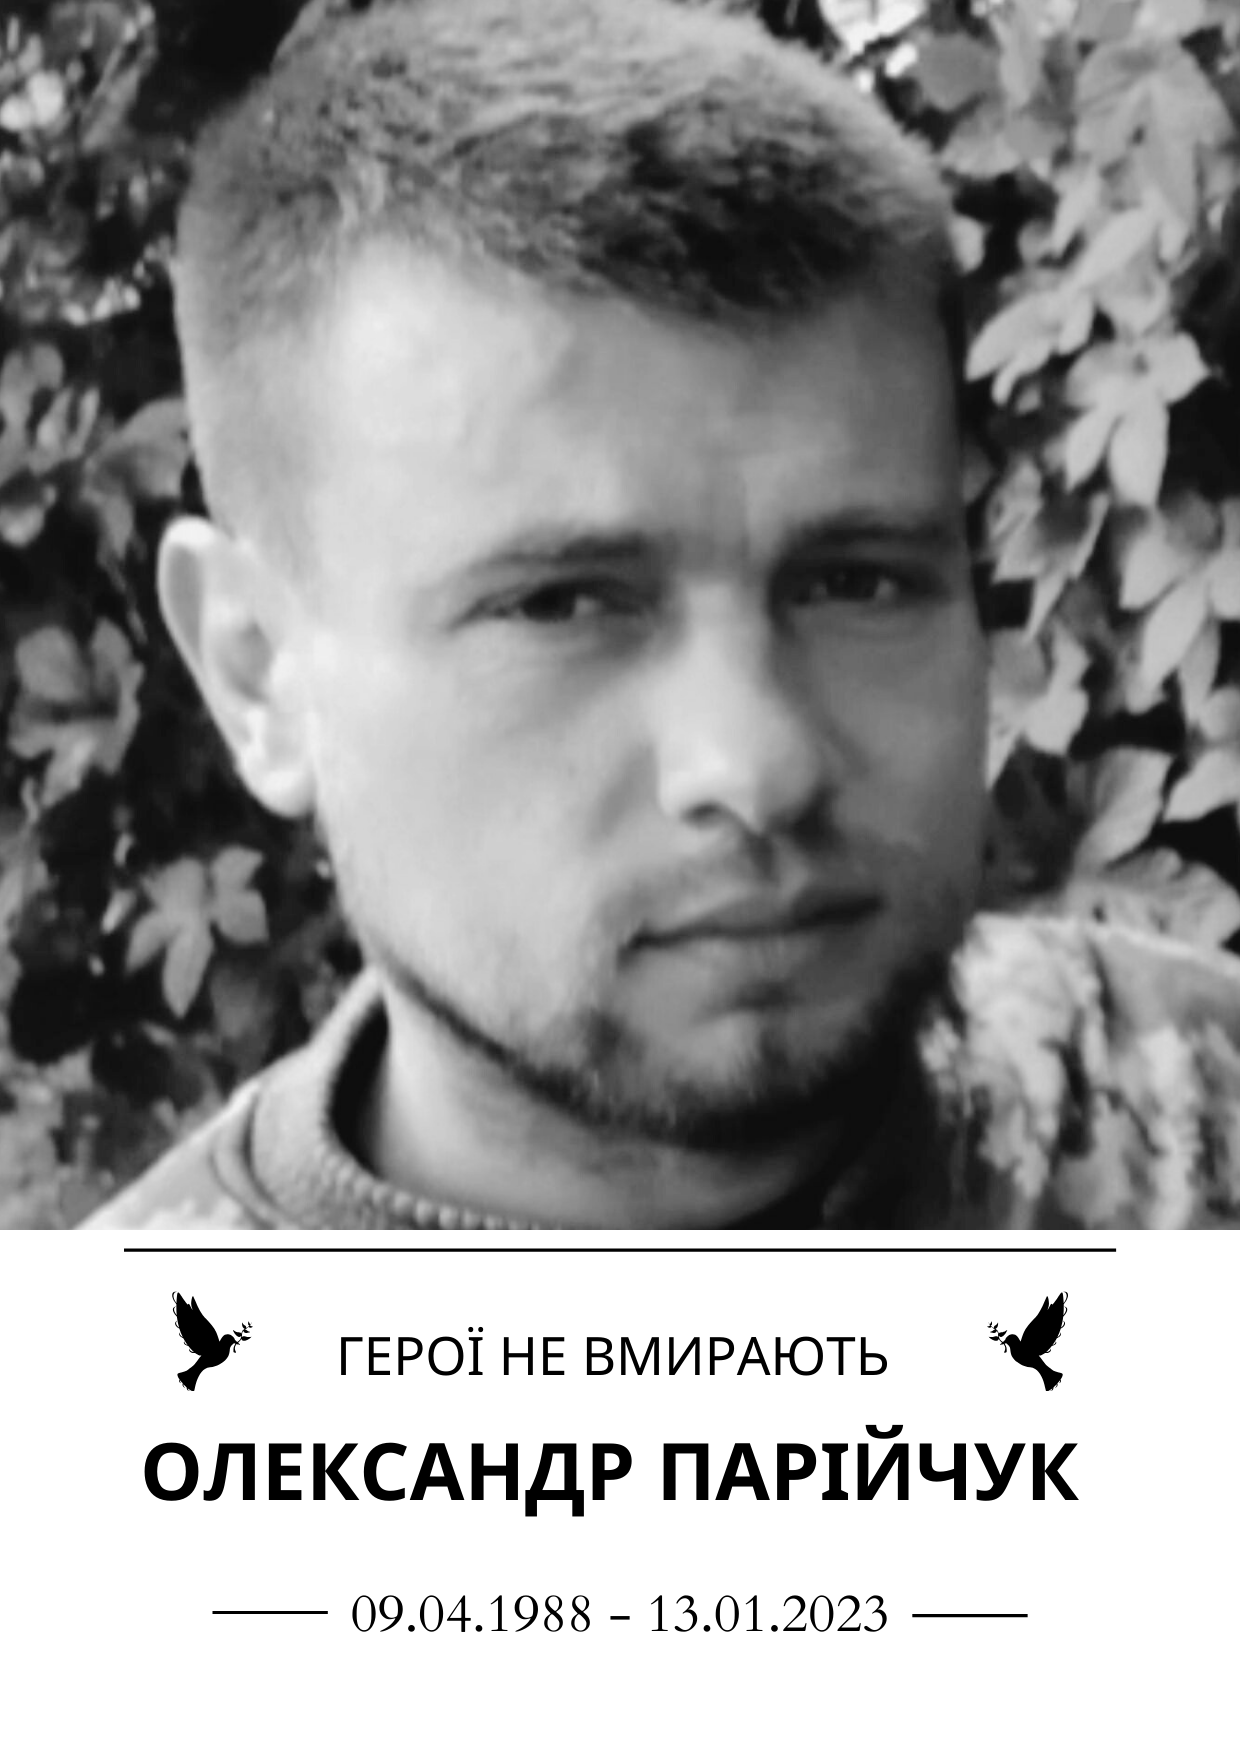 Олександ Парійчук роки життя 9 квітня 1988 року - 13 січня 2023 року Герої не вмирають